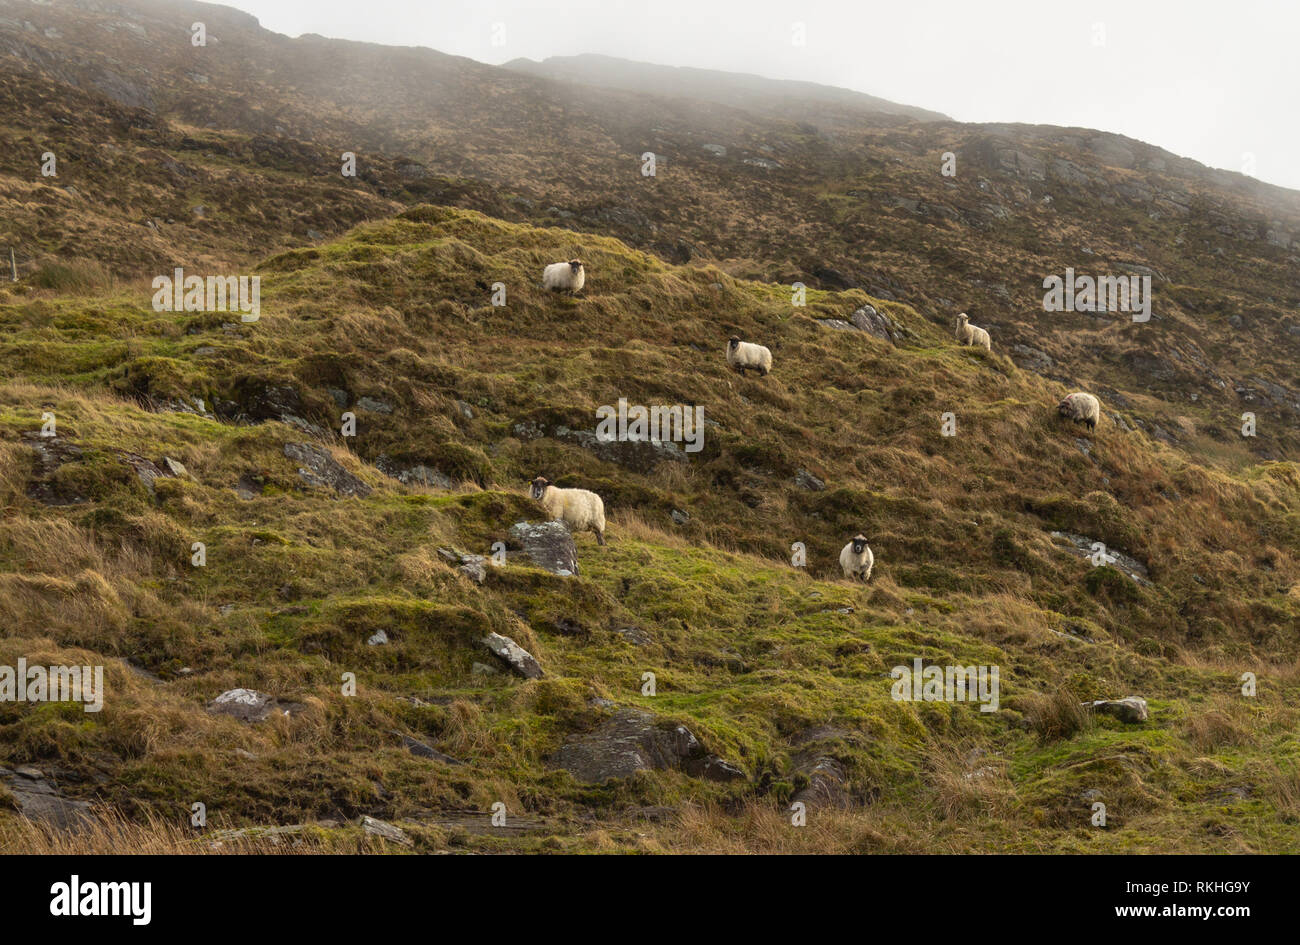 Razza di pecore o pecora su un lato della montagna in Irlanda. Foto Stock